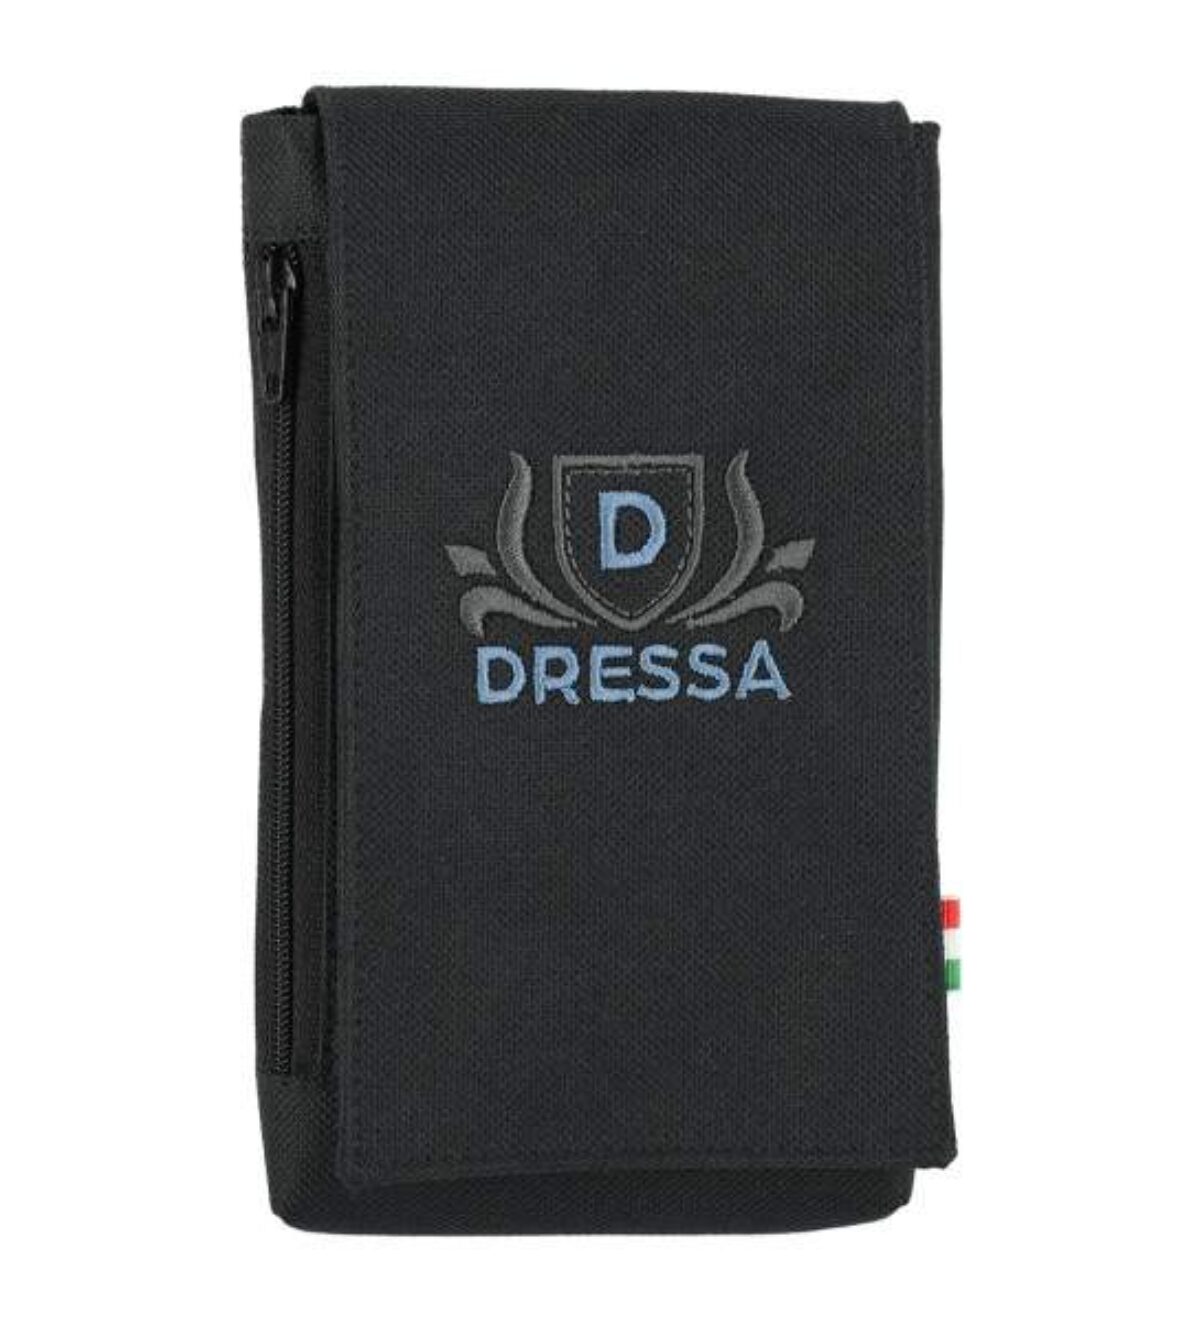 Dressa Phone hímzett nyakba akasztható övre fűzhető univerzális telefontok - fekete_d185086_Mirunska.com